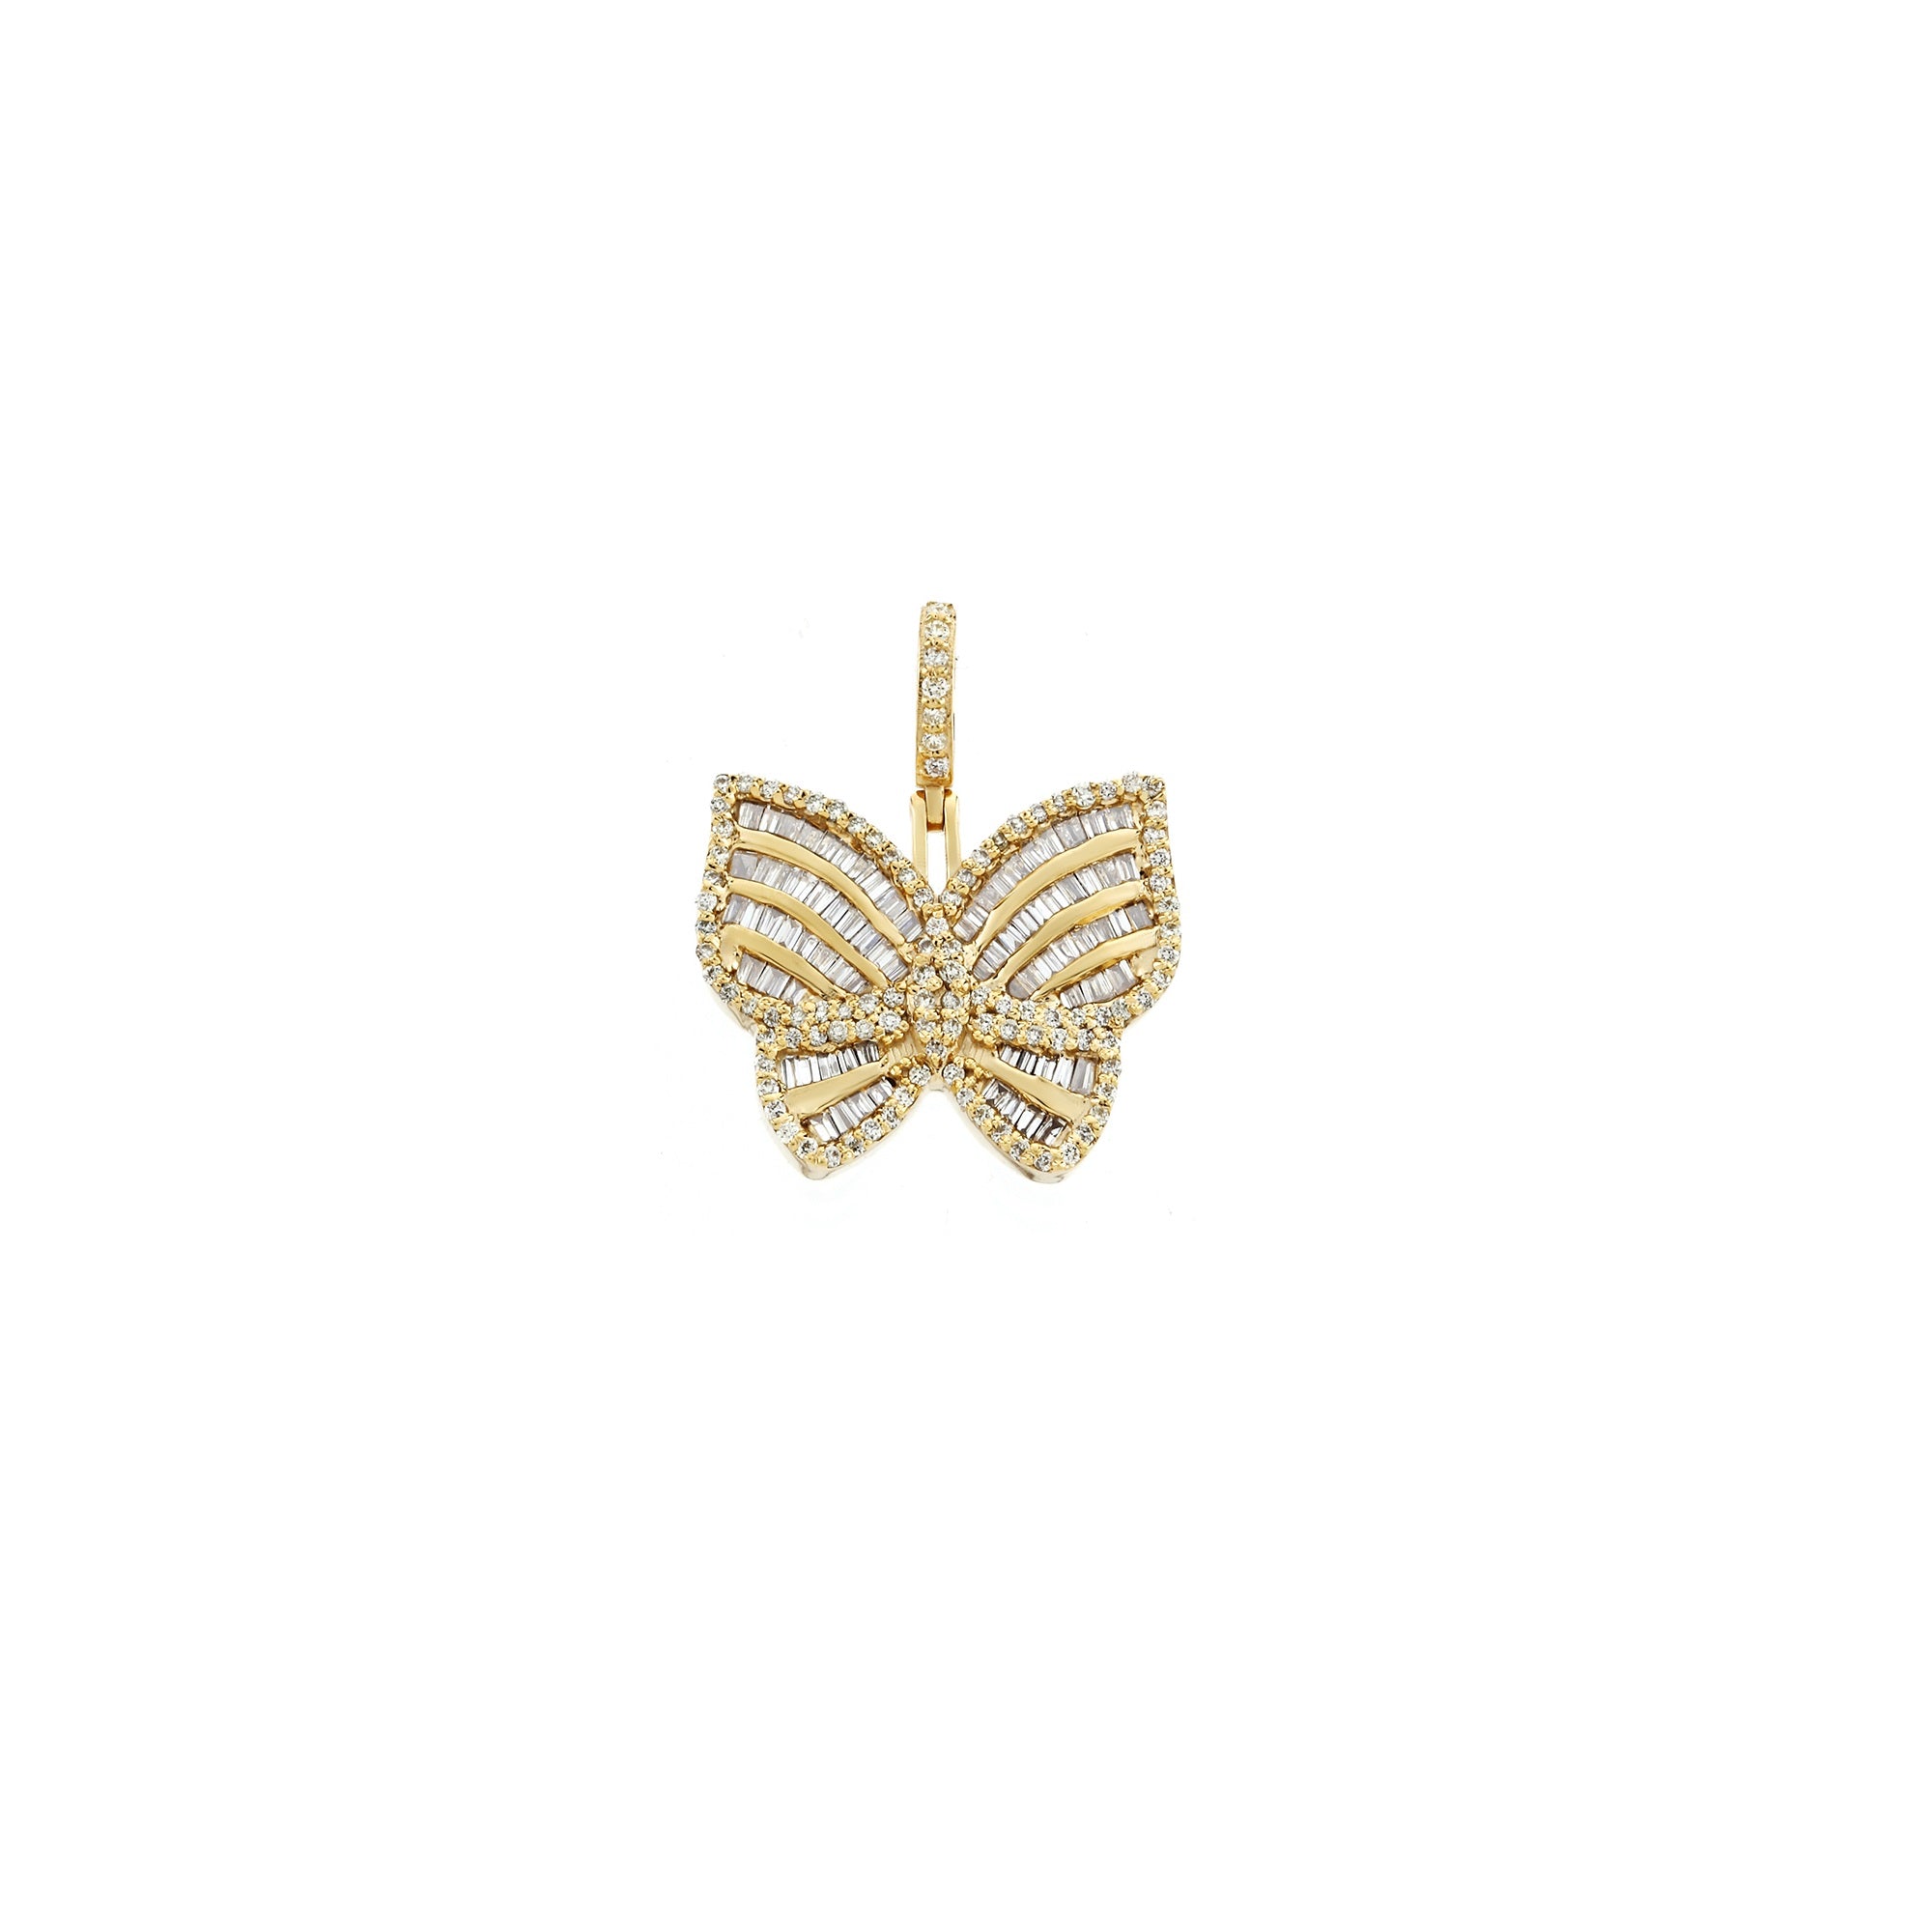 Yellow Gold Baguette Diamond Butterfly Earrings by Rafaela Jewelry